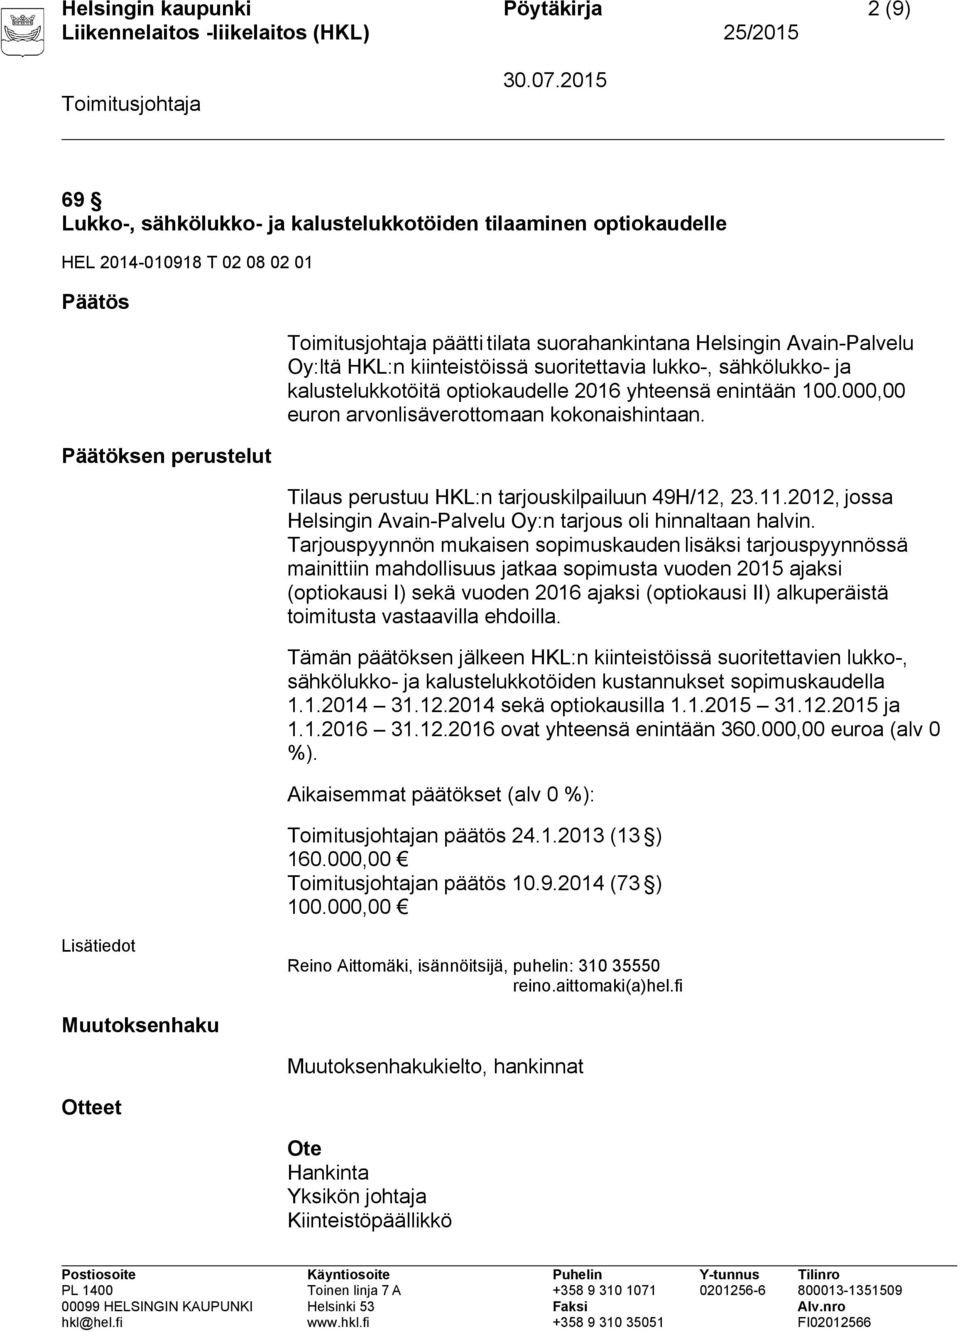 Tilaus perustuu HKL:n tarjouskilpailuun 49H/12, 23.11.2012, jossa Helsingin Avain-Palvelu Oy:n tarjous oli hinnaltaan halvin.